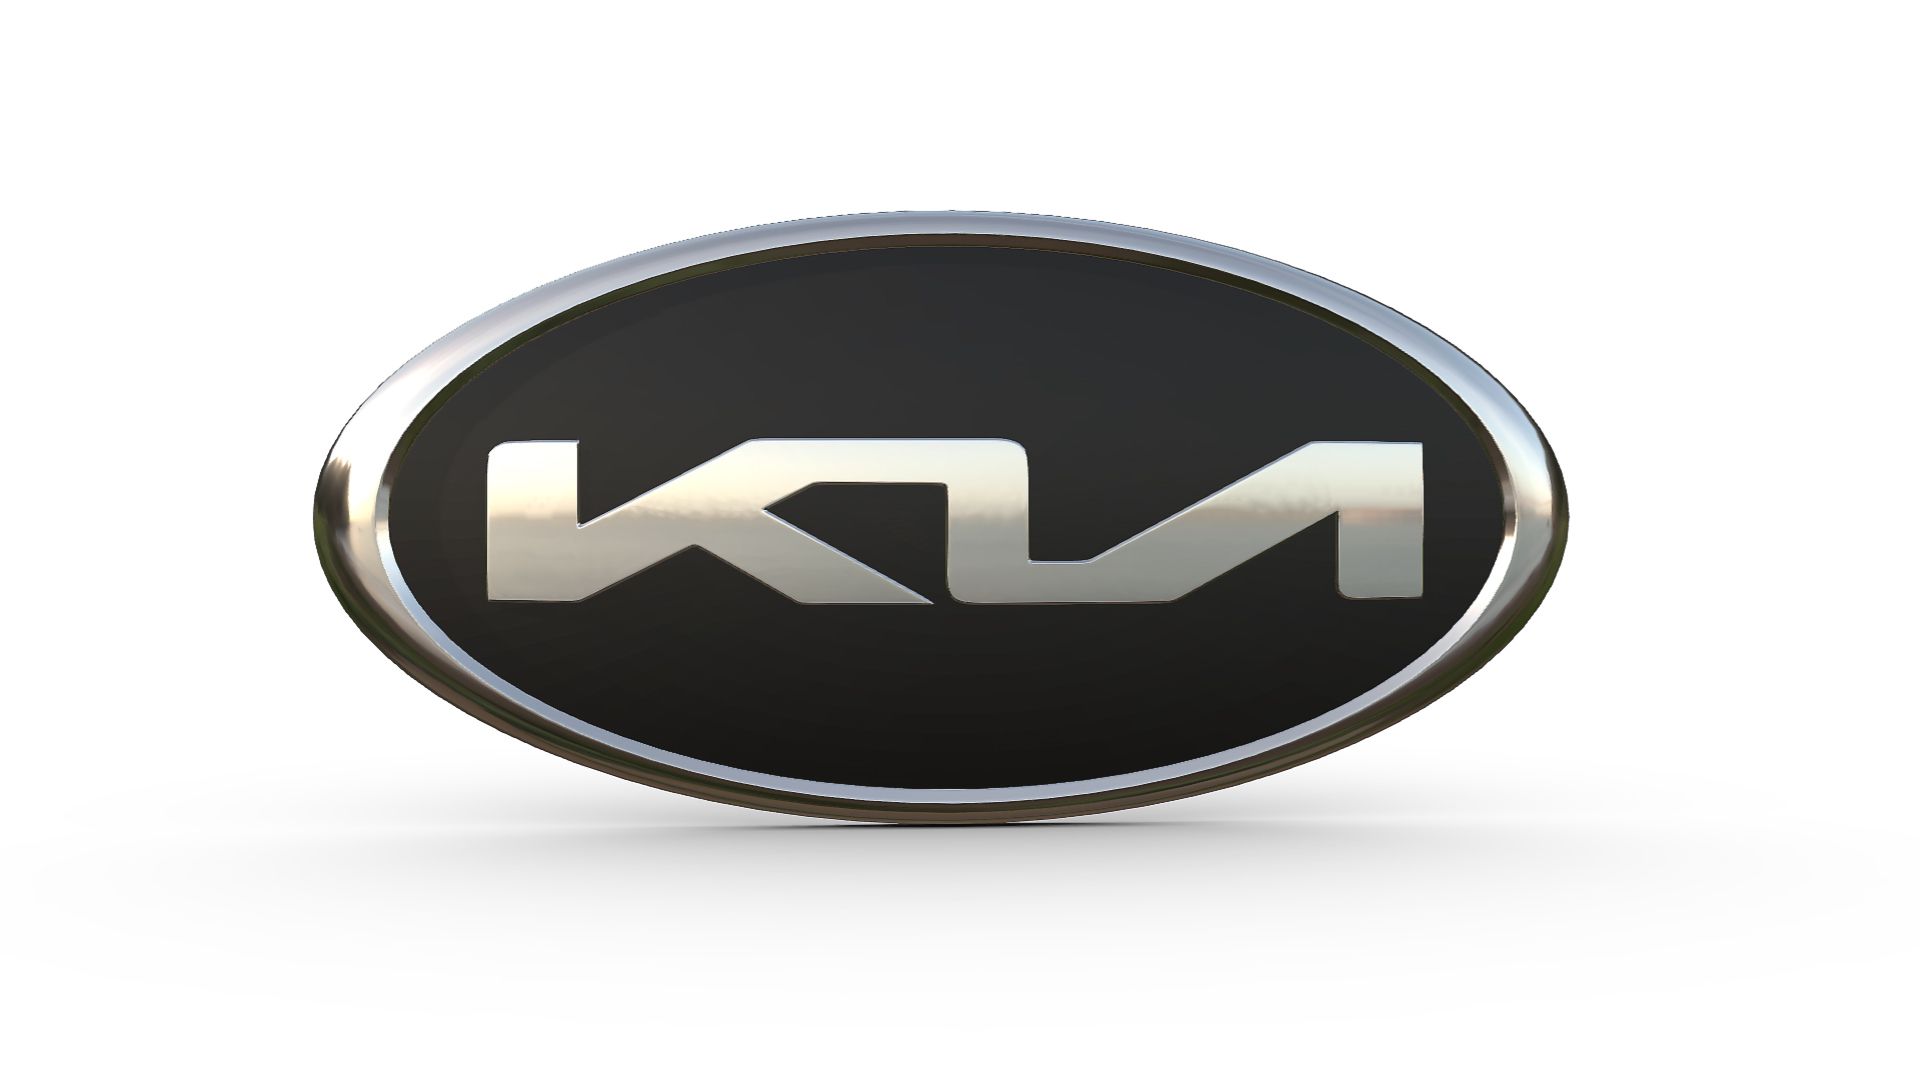 Kia mueve ficha con uno de sus top ventas: descuento de más de 6.000 euros